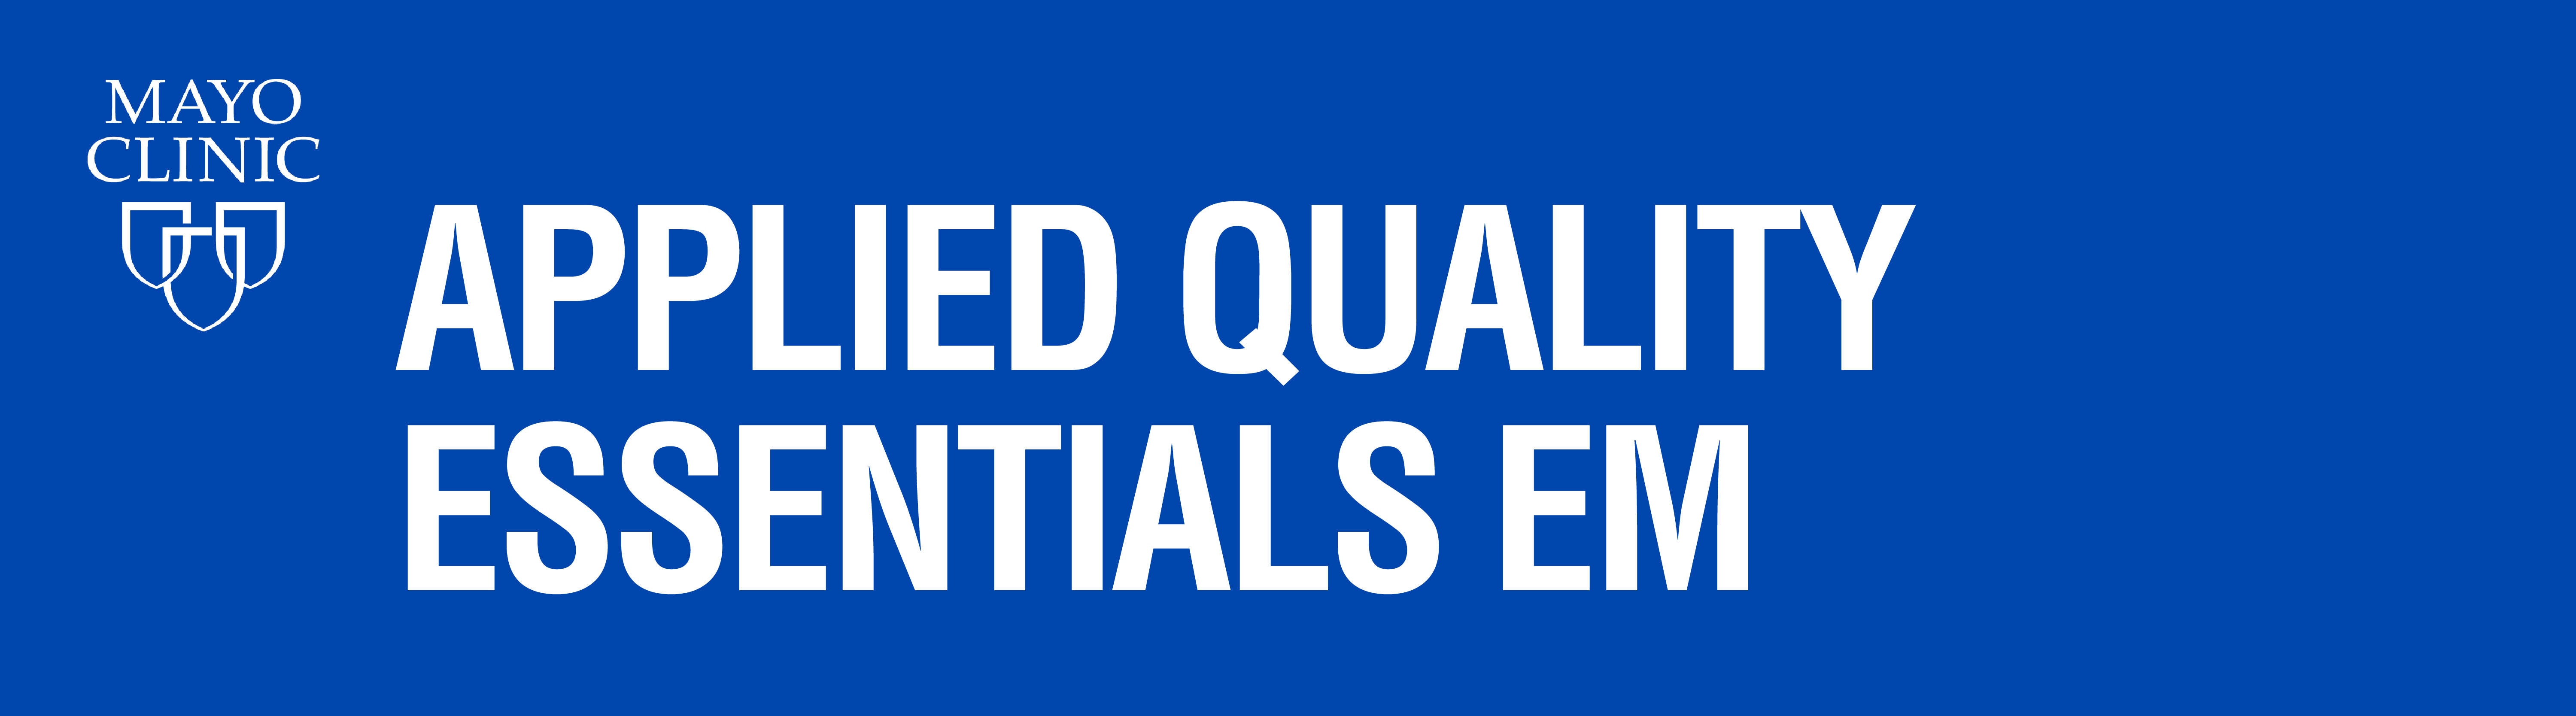 Applied Quality Essentials EM